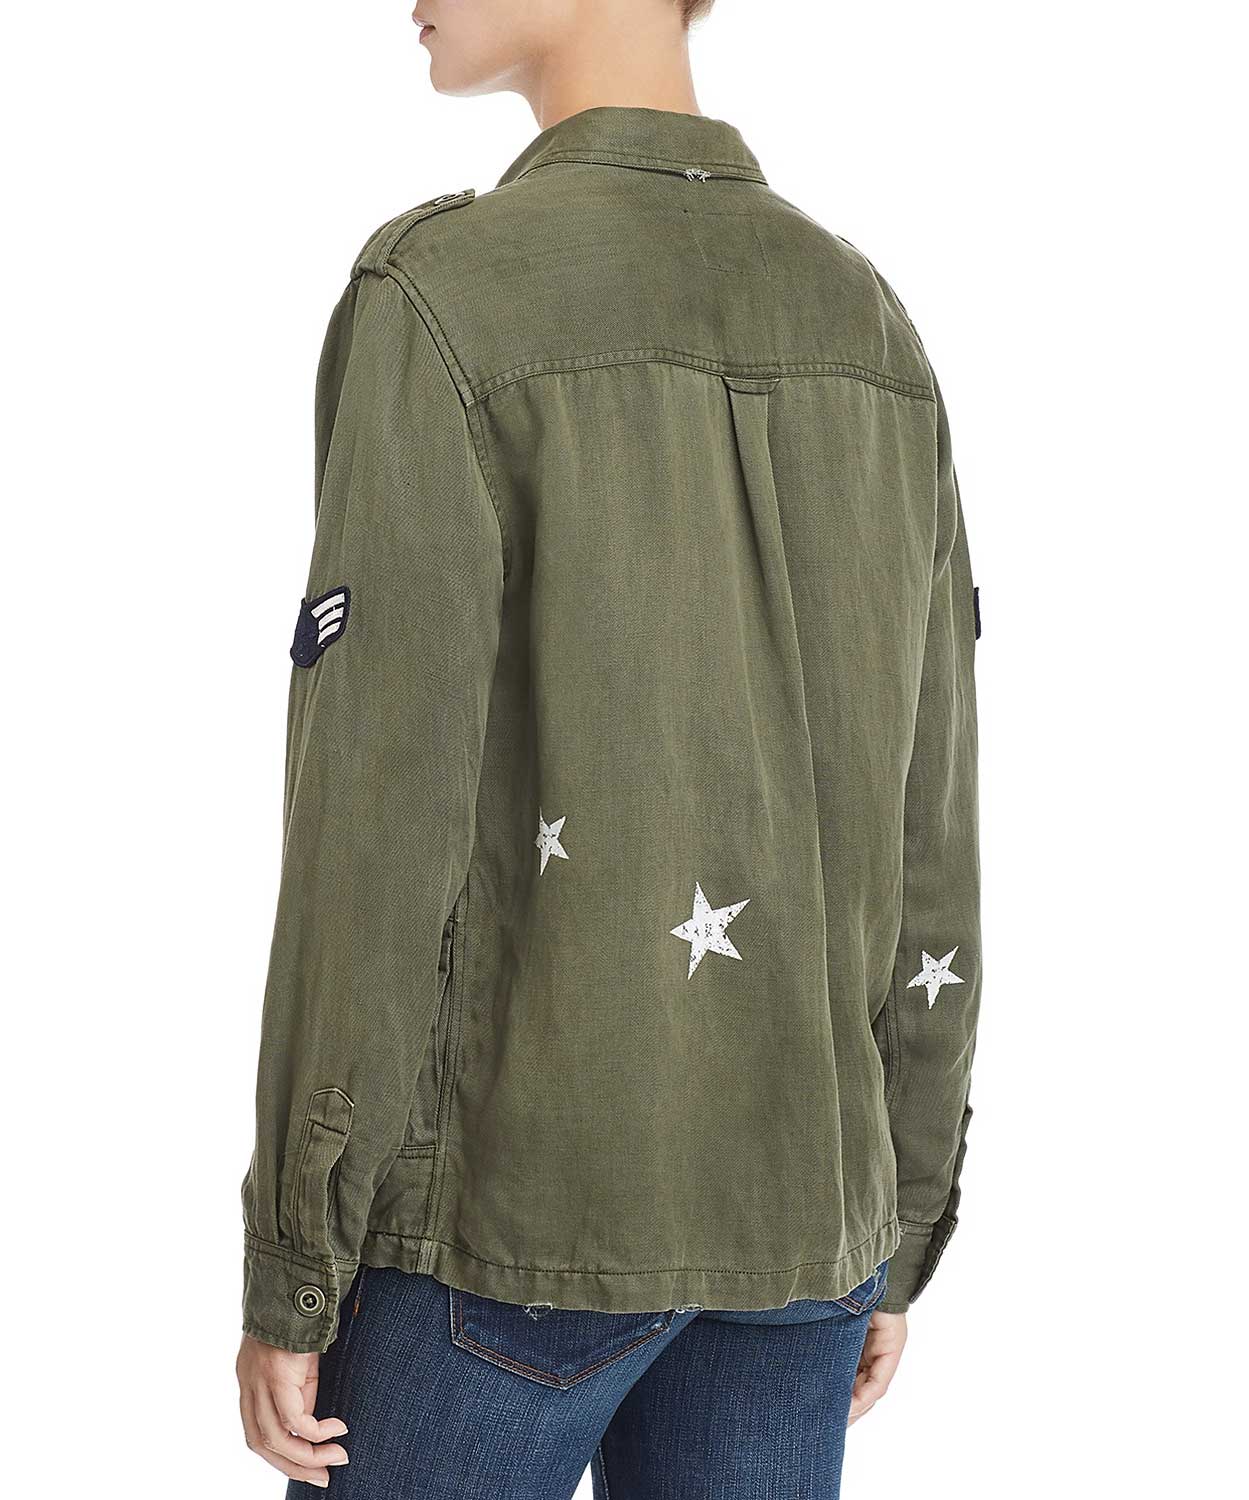 Kato Military Jacket